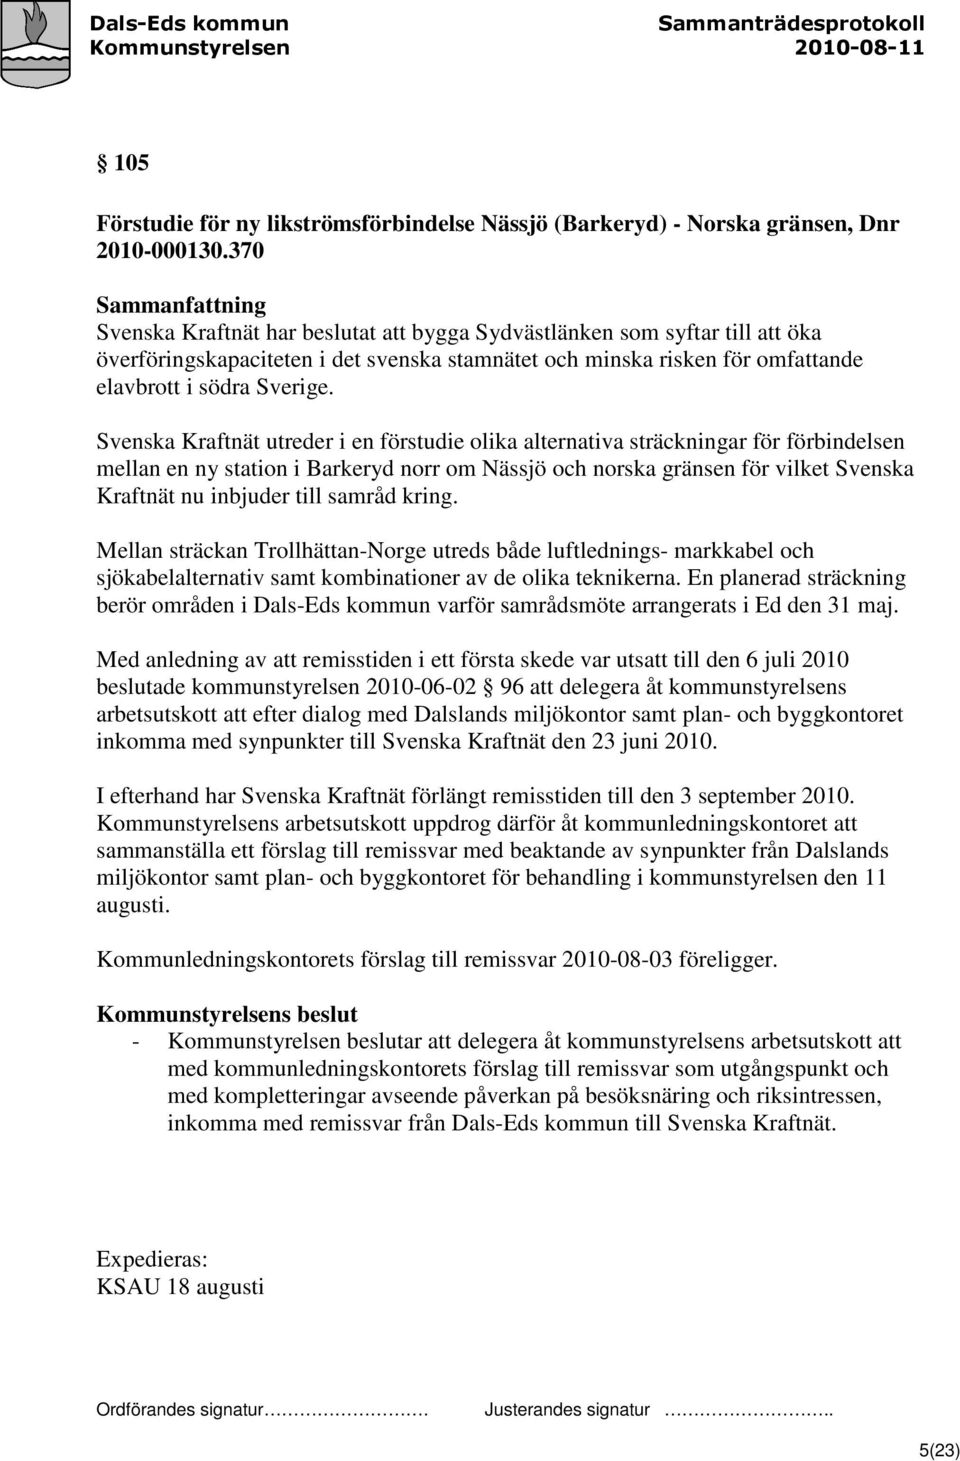 Svenska Kraftnät utreder i en förstudie olika alternativa sträckningar för förbindelsen mellan en ny station i Barkeryd norr om Nässjö och norska gränsen för vilket Svenska Kraftnät nu inbjuder till